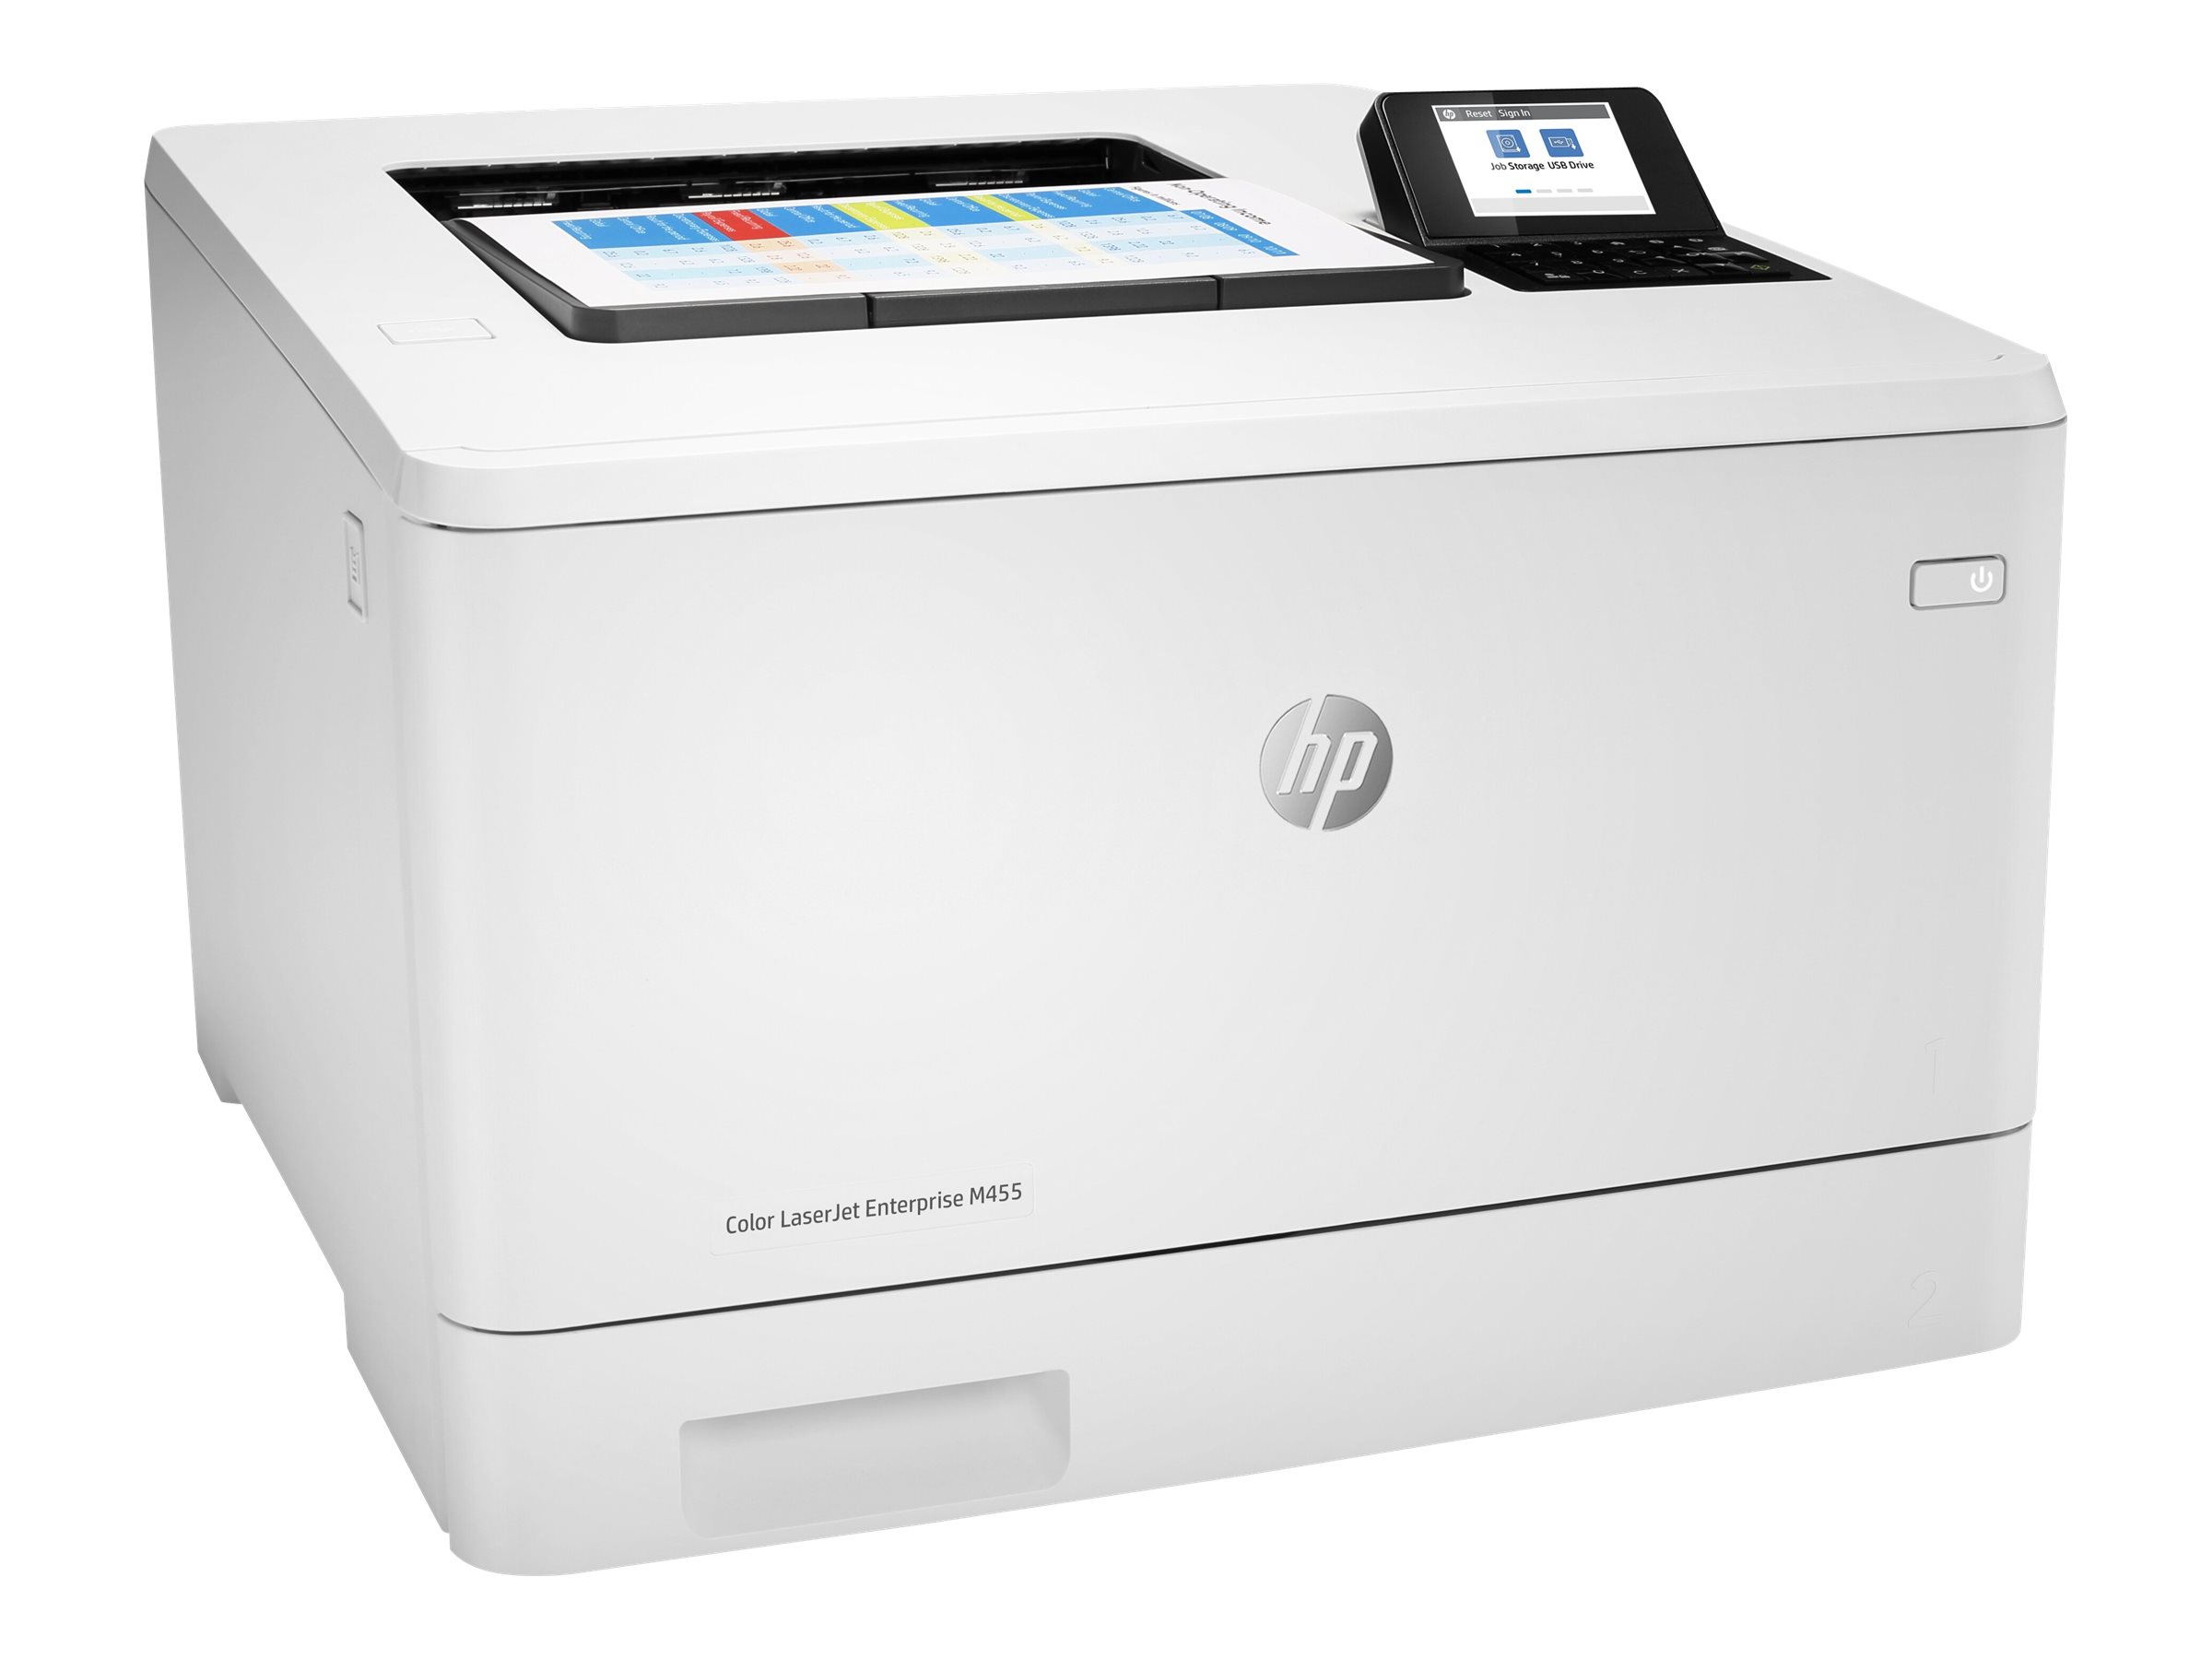 HP Color LaserJet Enterprise M455dn - Imprimante - couleur - Recto-verso - laser - A4/Legal - 600 x 600 ppp - jusqu'à 27 ppm (mono)/jusqu'à 27 ppm (couleur) - capacité : 300 feuilles - USB 2.0, Gigabit LAN, hôte USB 2.0 - 3PZ95A#B19 - Imprimantes laser couleur